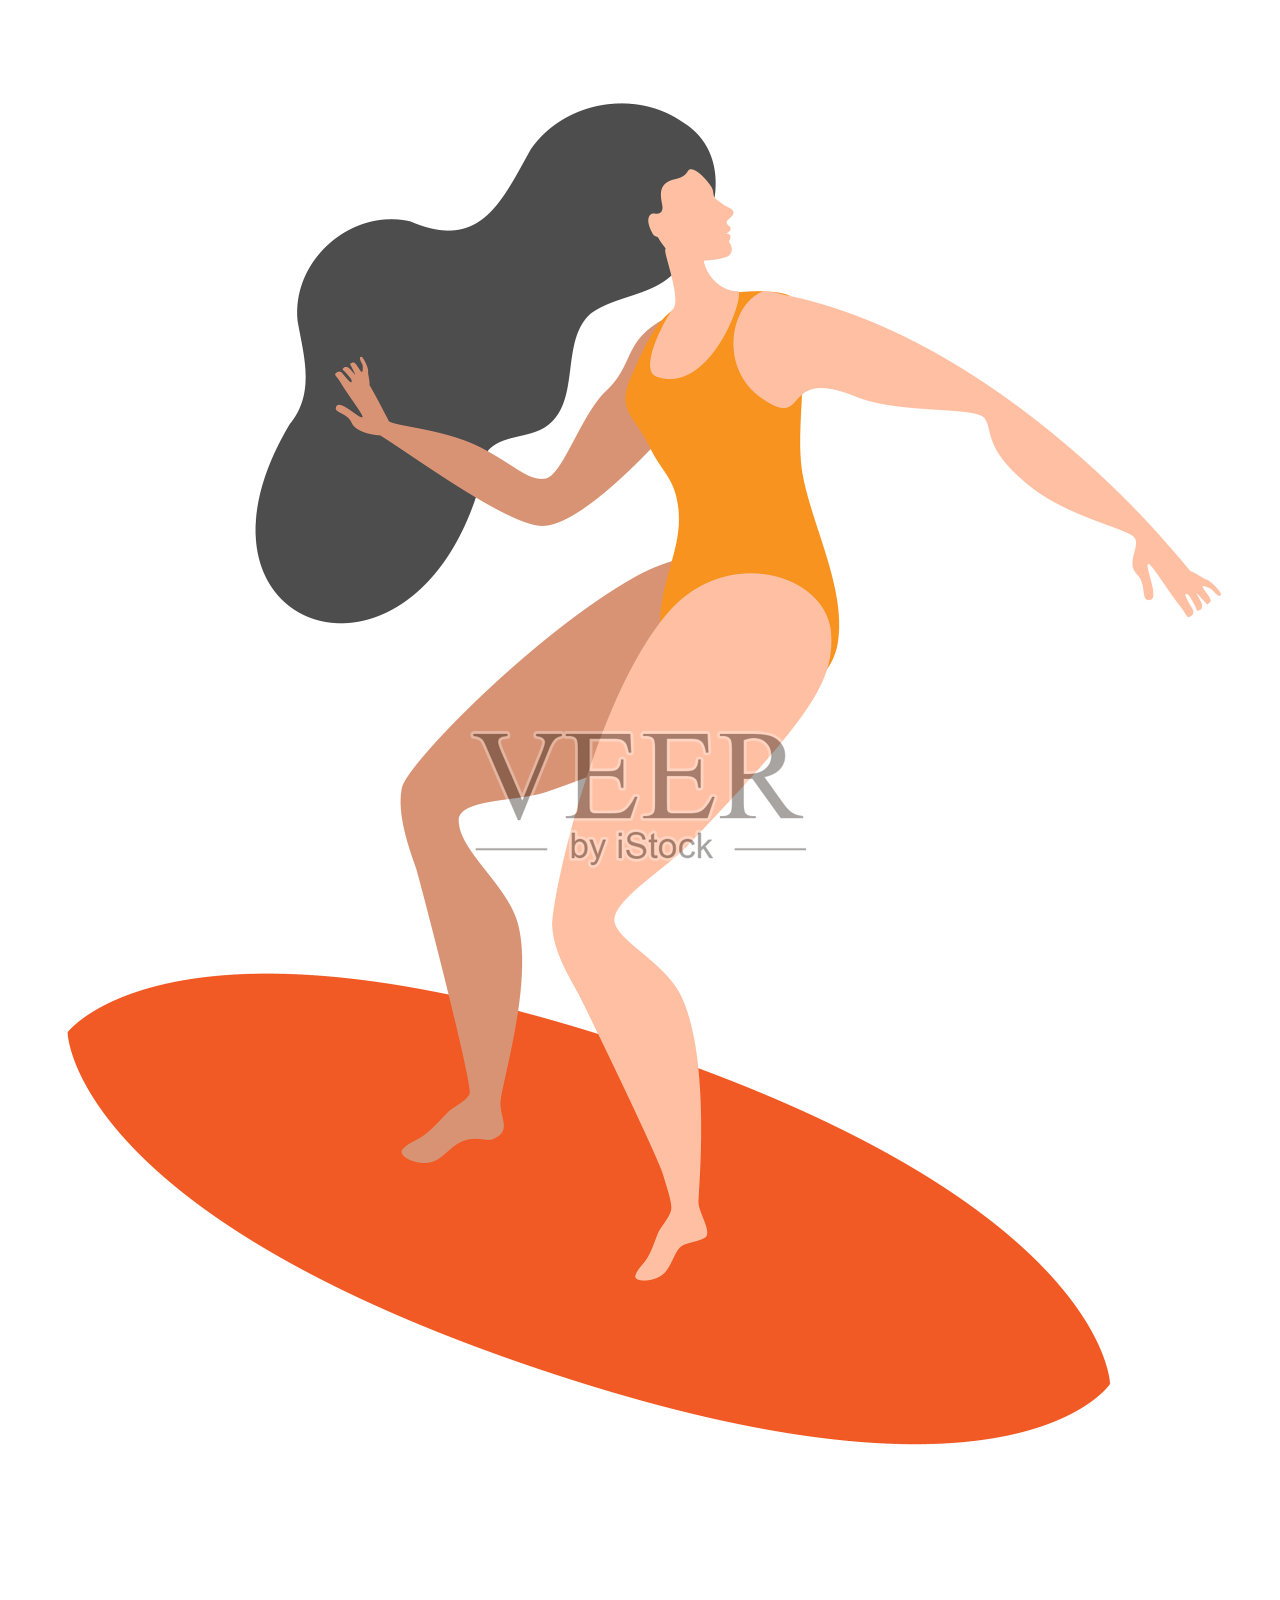 一个穿着泳衣的女孩正在冲浪。插画图片素材